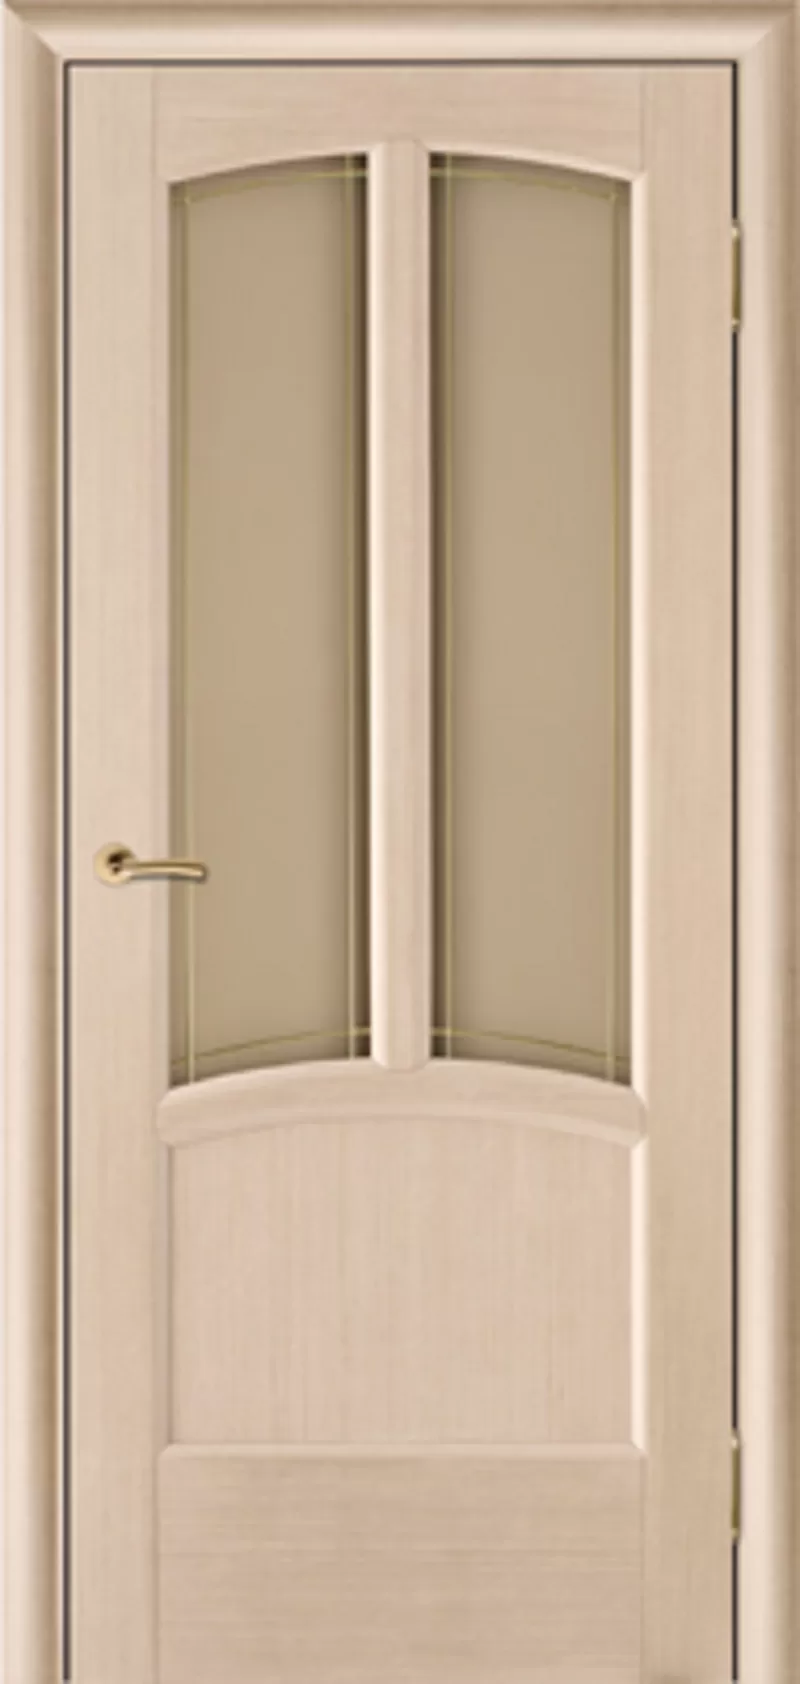 АКЦИЯ дверь из массива от 1850 т.р. в РАССРОЧКУ 0% на 3 месяца в бел. руб